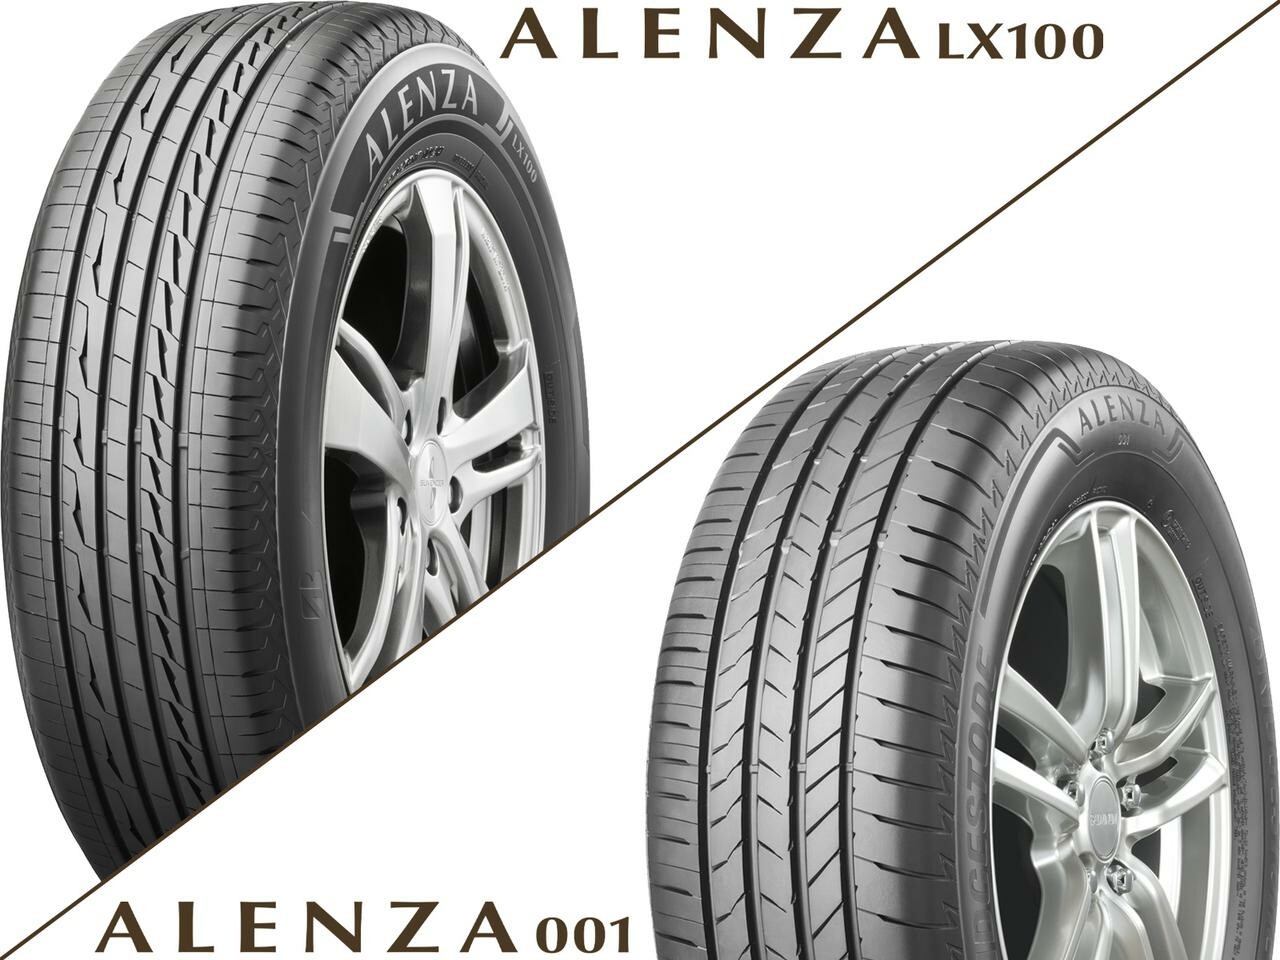 ブリヂストンのSUV専用設計タイヤブランド、ALENZA（アレンザ）の「001」と「LX100」に、どんな違いがあるのか